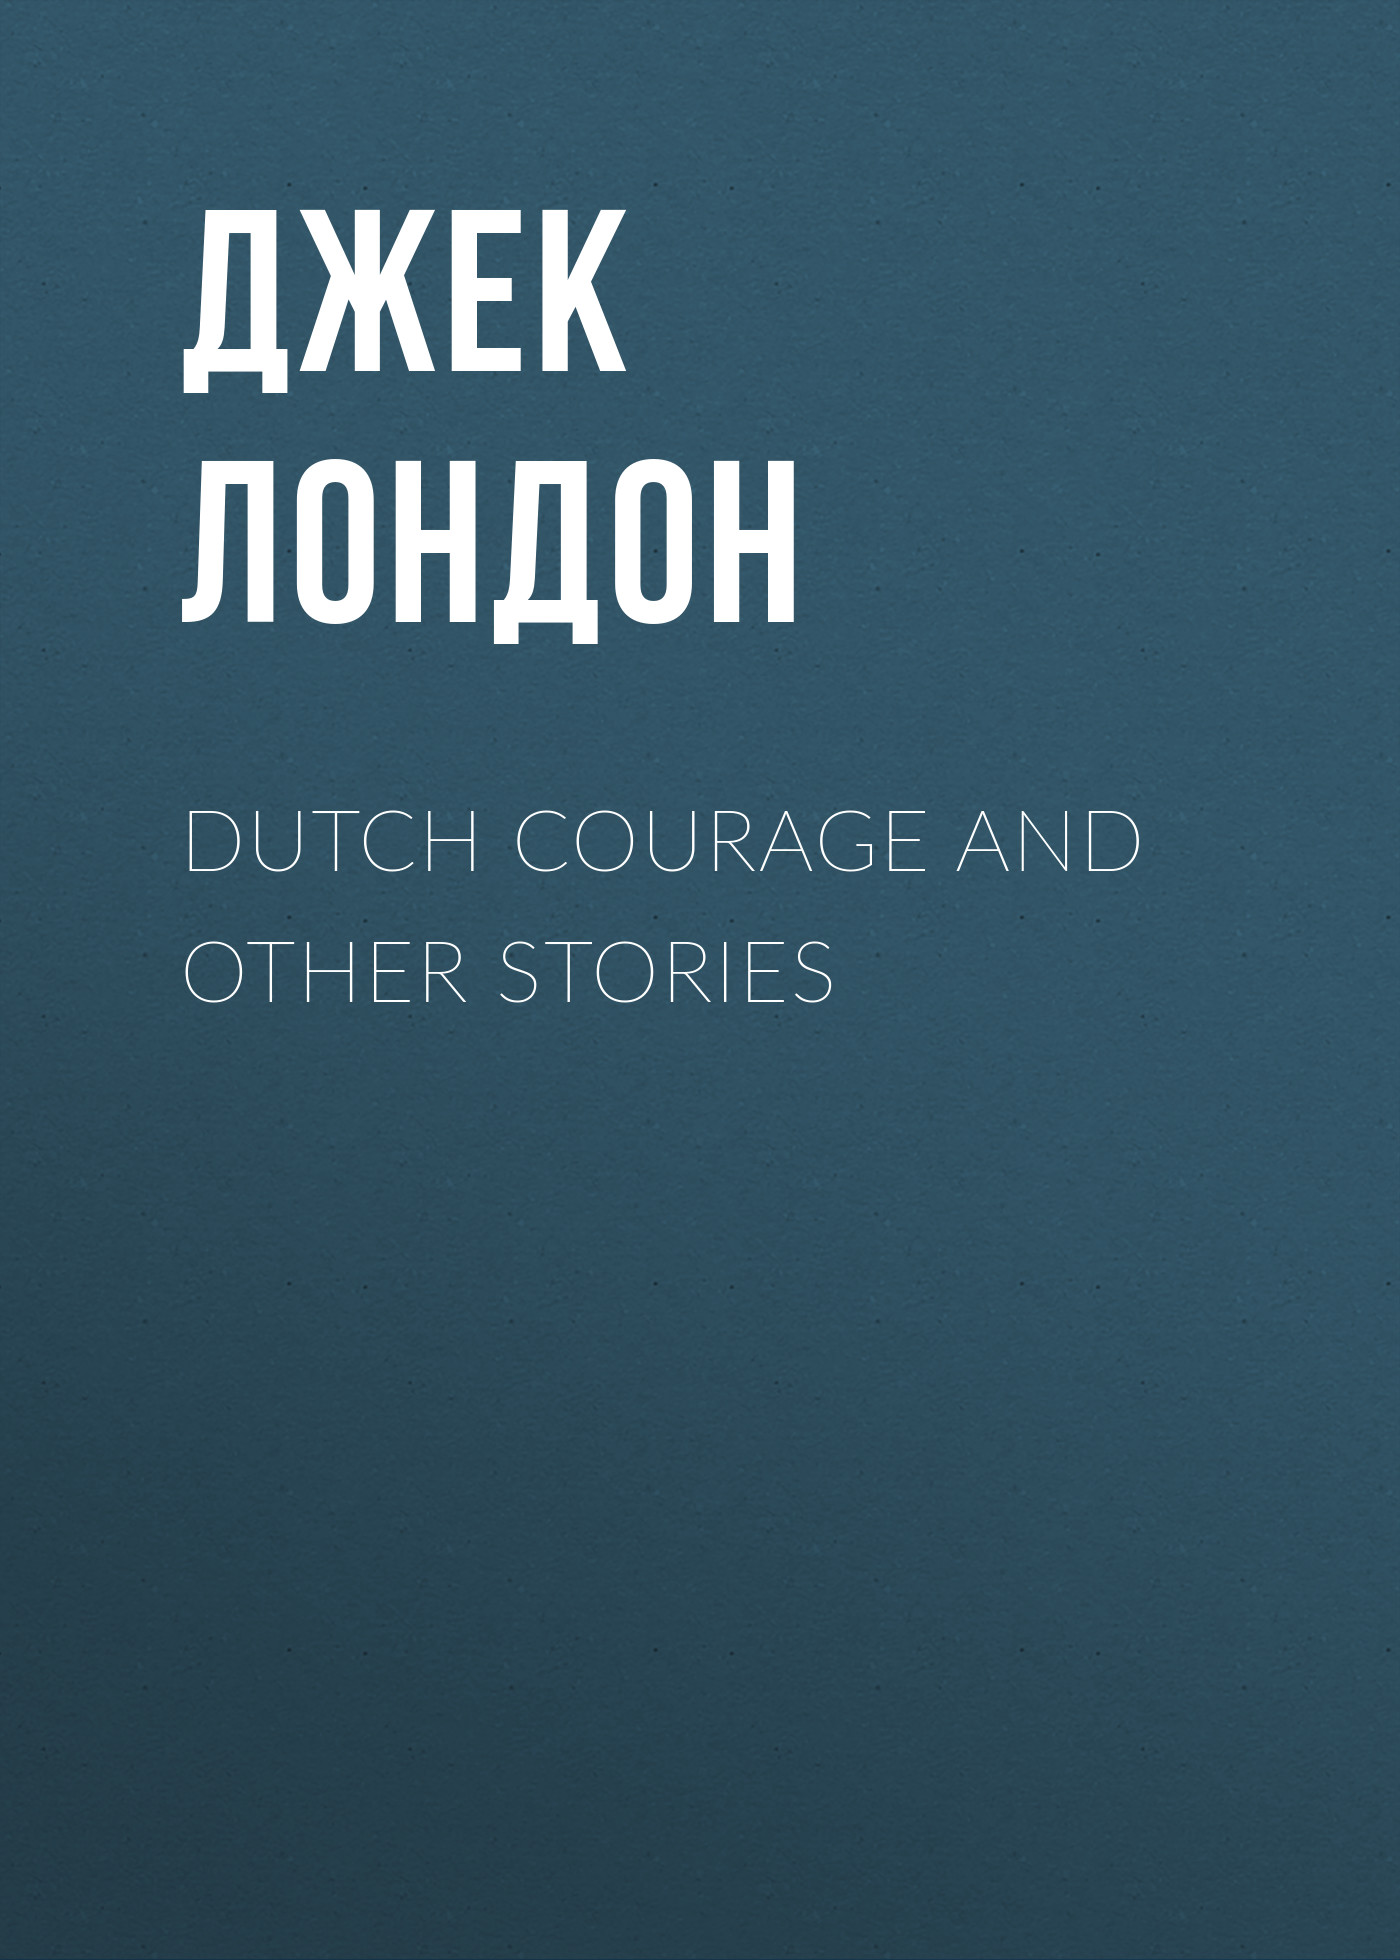 Книга Dutch Courage and Other Stories из серии , созданная Джек Лондон, может относится к жанру Зарубежная старинная литература, Зарубежная классика. Стоимость электронной книги Dutch Courage and Other Stories с идентификатором 25291795 составляет 0 руб.